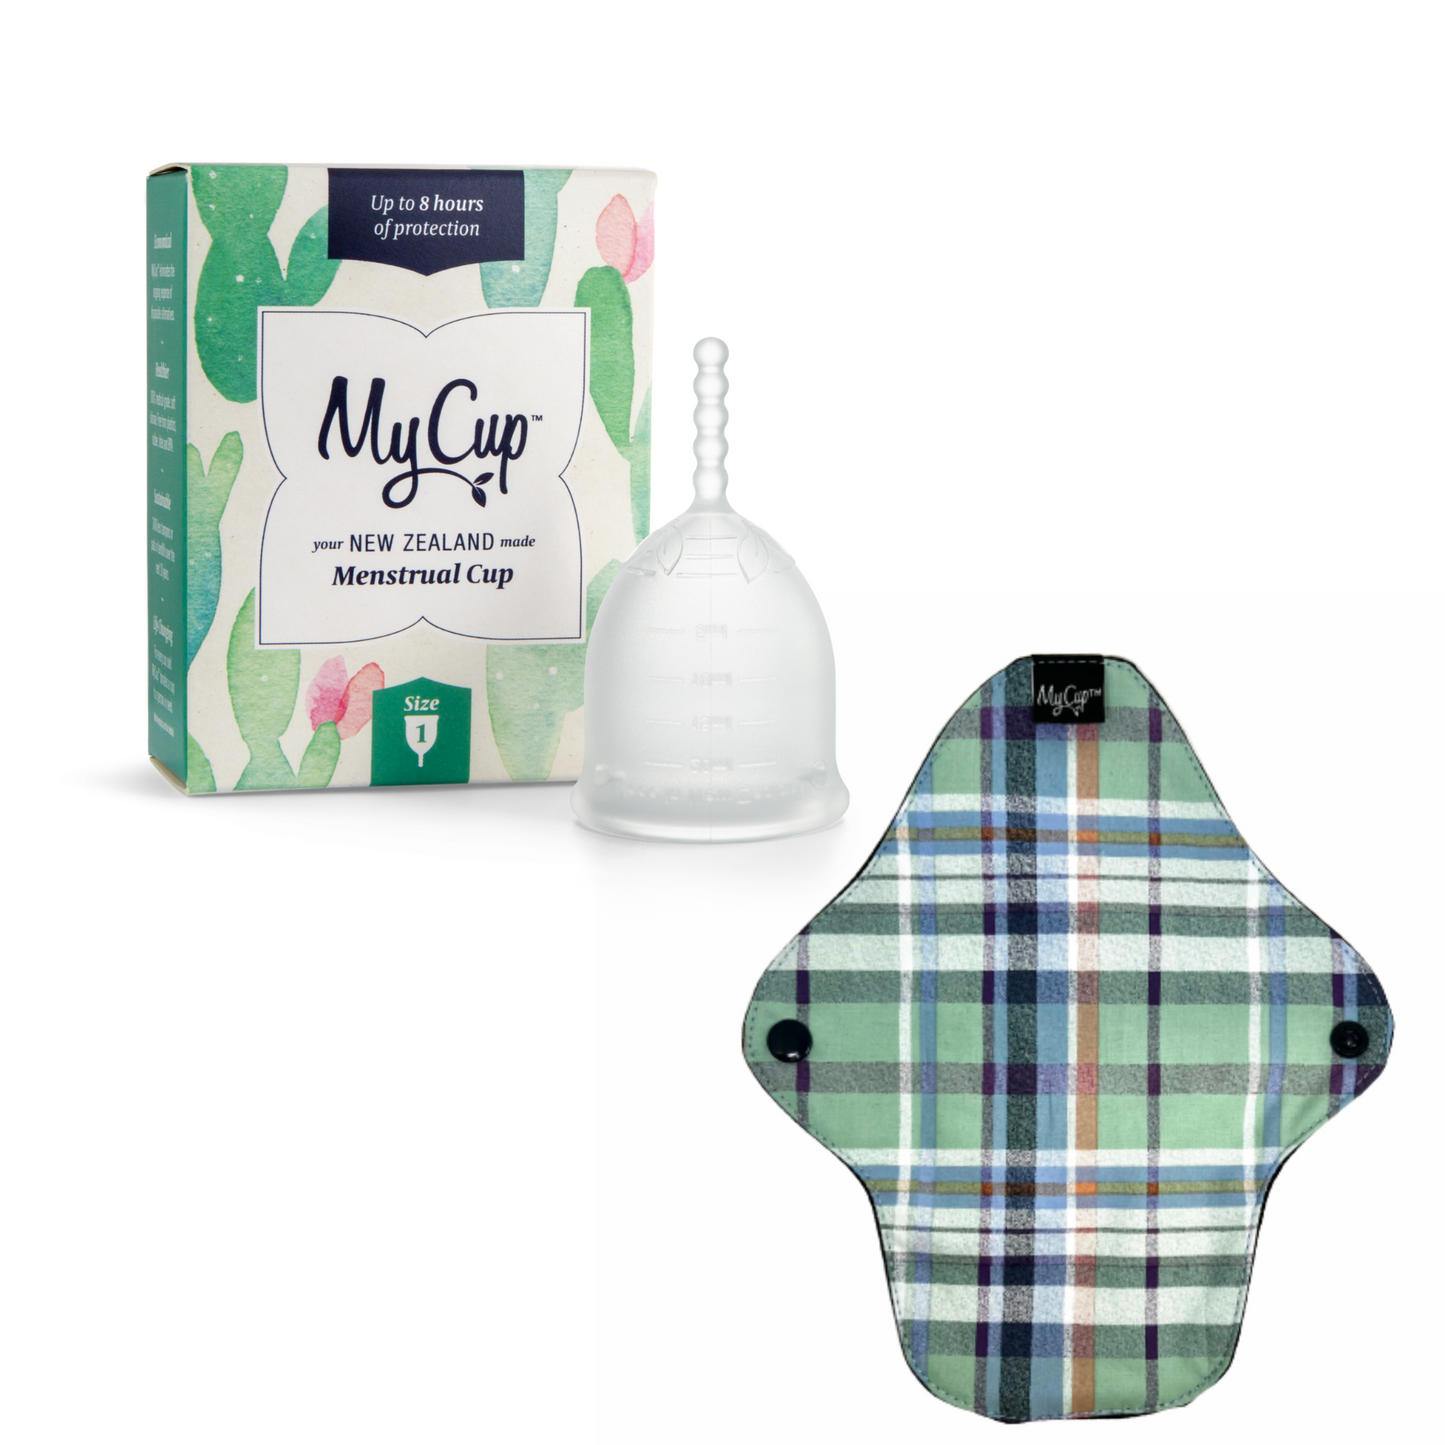 MyCup™ Menstrual Cup Size 1 + Reusable Regular Pad Bundle